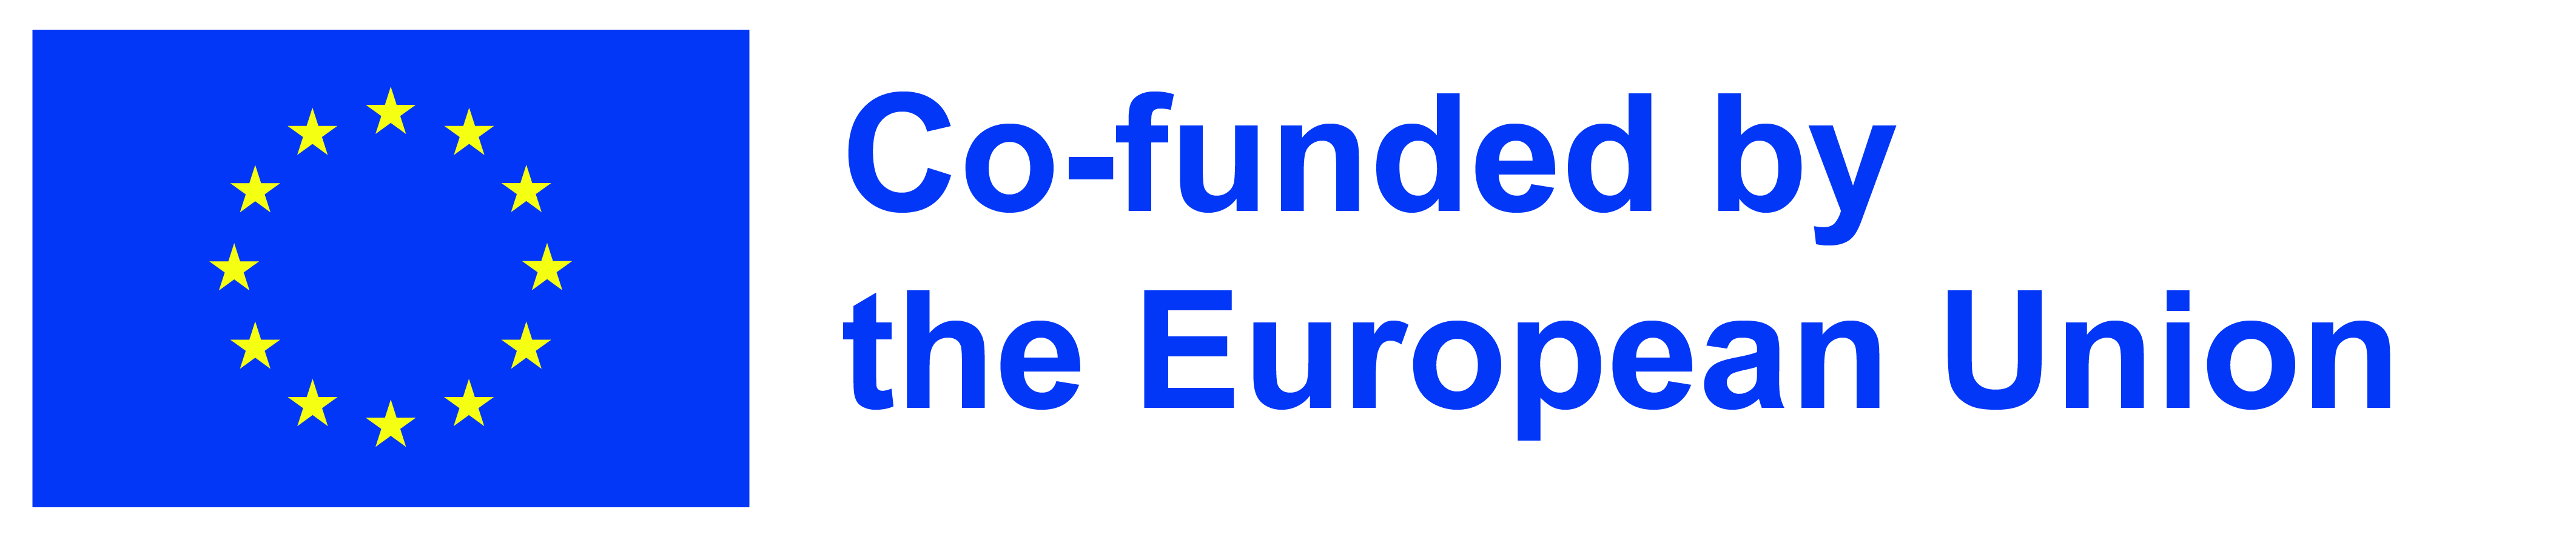 EU:n rahoitus-logo